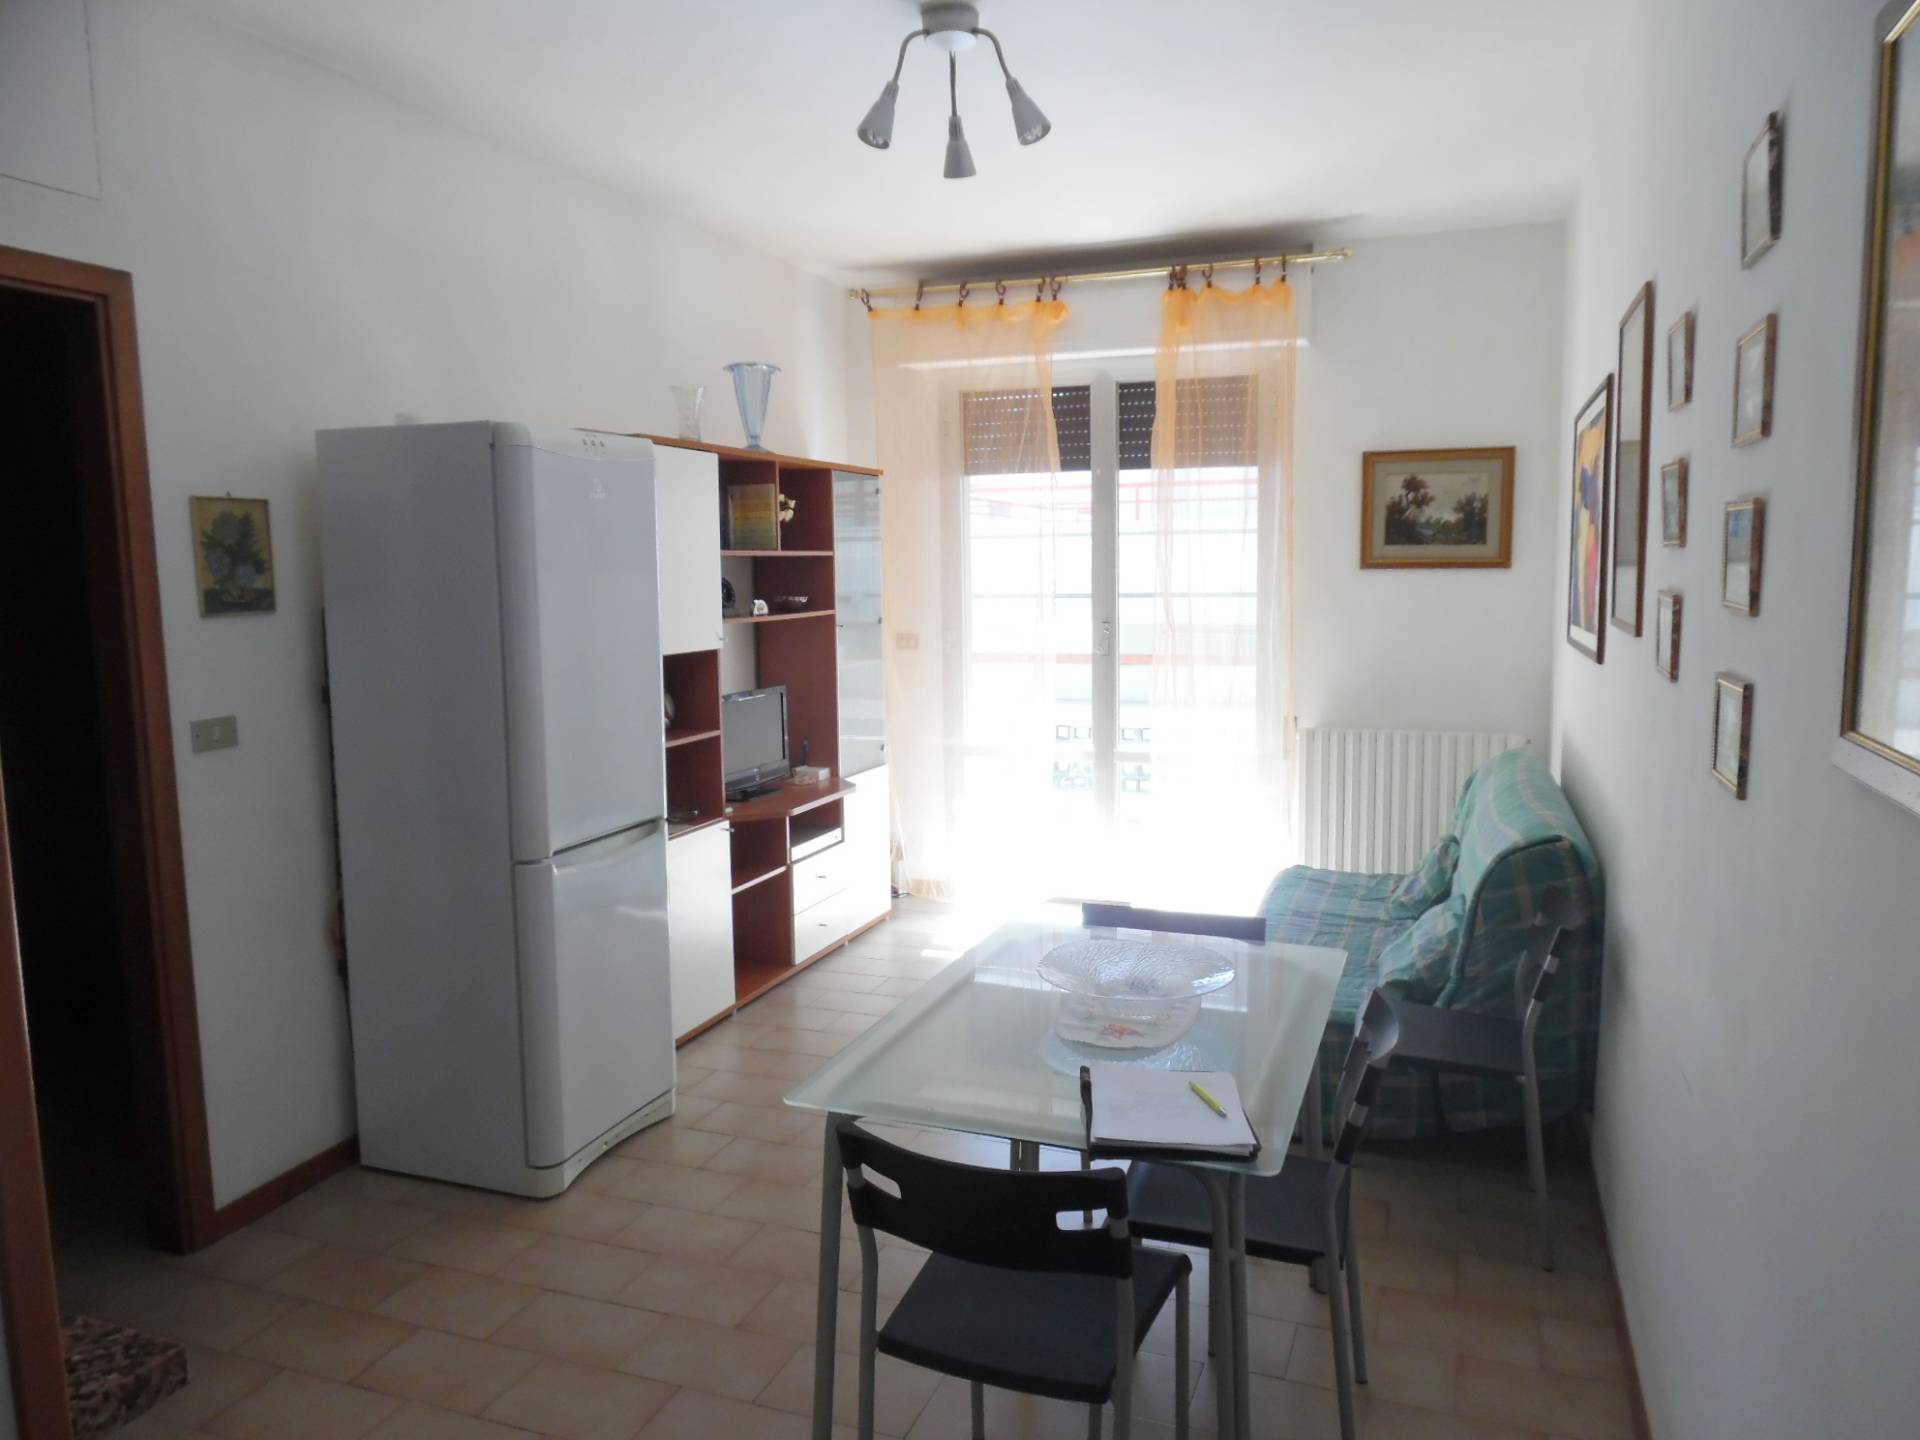 Appartamento in vendita a Martinsicuro, 3 locali, zona Località: ZonaMare, prezzo € 95.000 | PortaleAgenzieImmobiliari.it